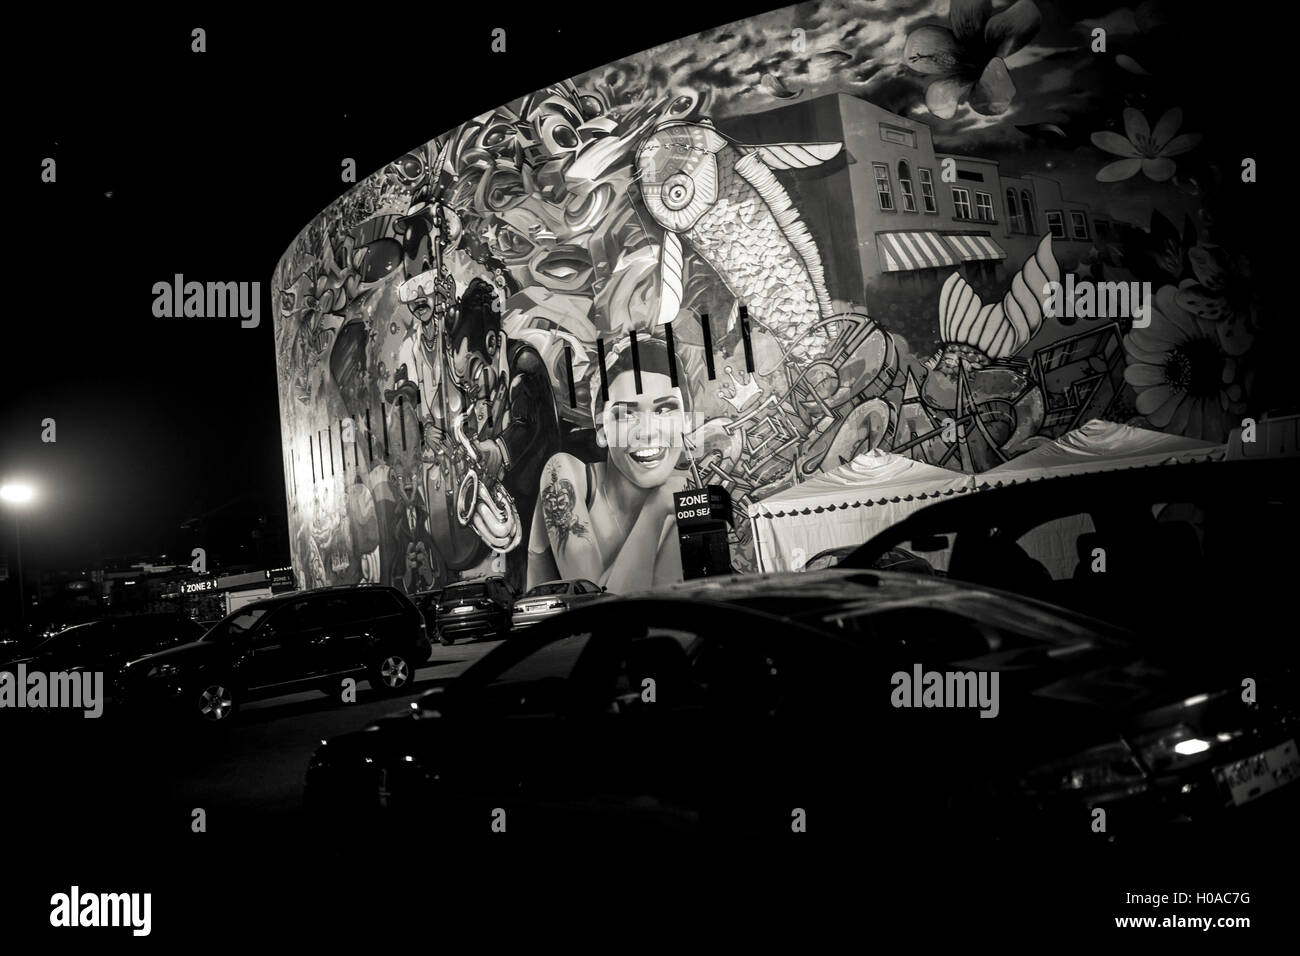 Les graffitis à Beyrouth - Liban / Beyrouth - Biel, Beyrouth, mai 2015. Nuit-club qui s'appelle l'un, couvert par le graffiti artistes (de l'extérieur). - Bilal Tarabey / Le Pictorium Banque D'Images